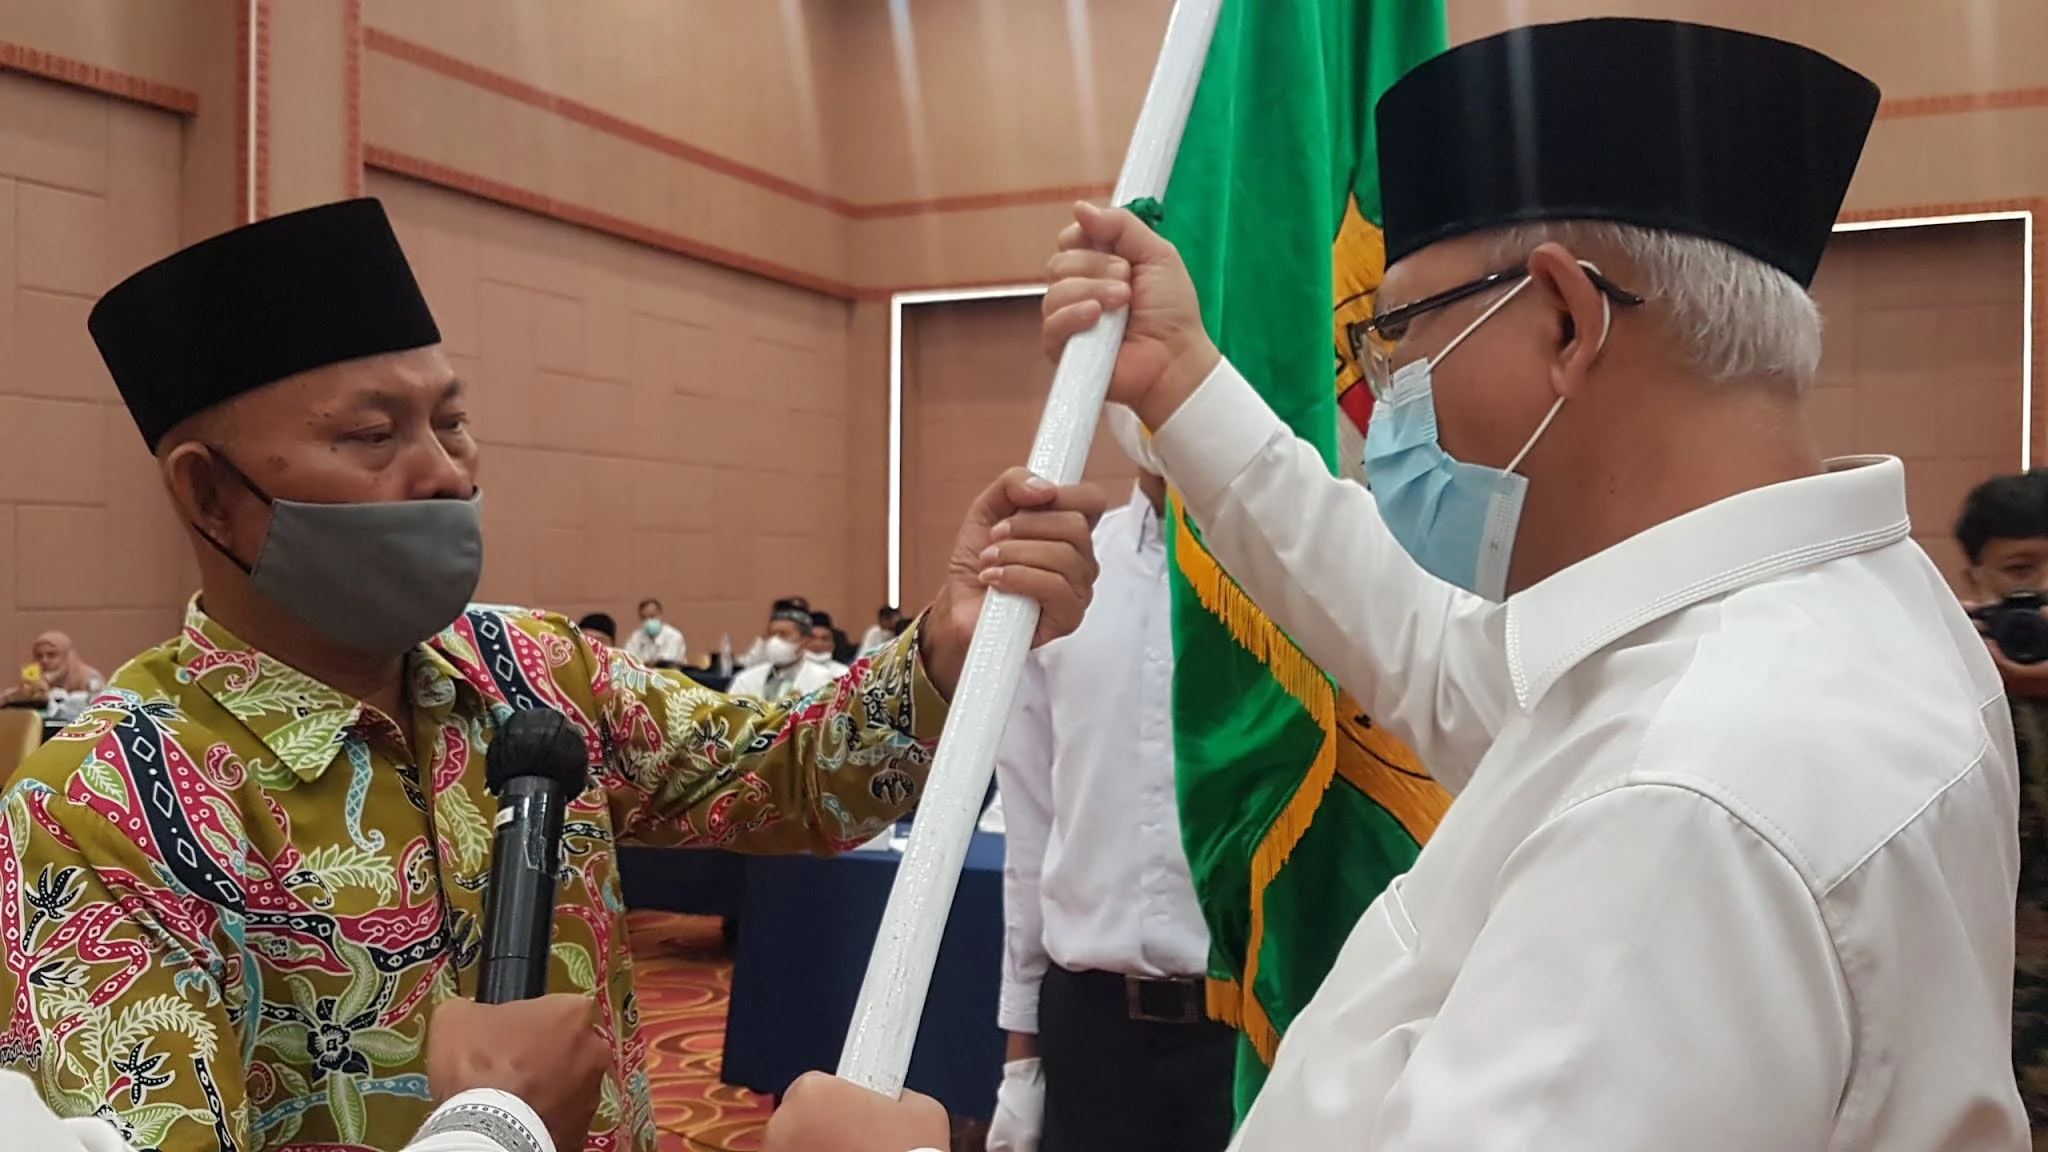 Ketua DPW LDII Kalimantan Tengah adalah HM. Nur Prayudi, S.E.